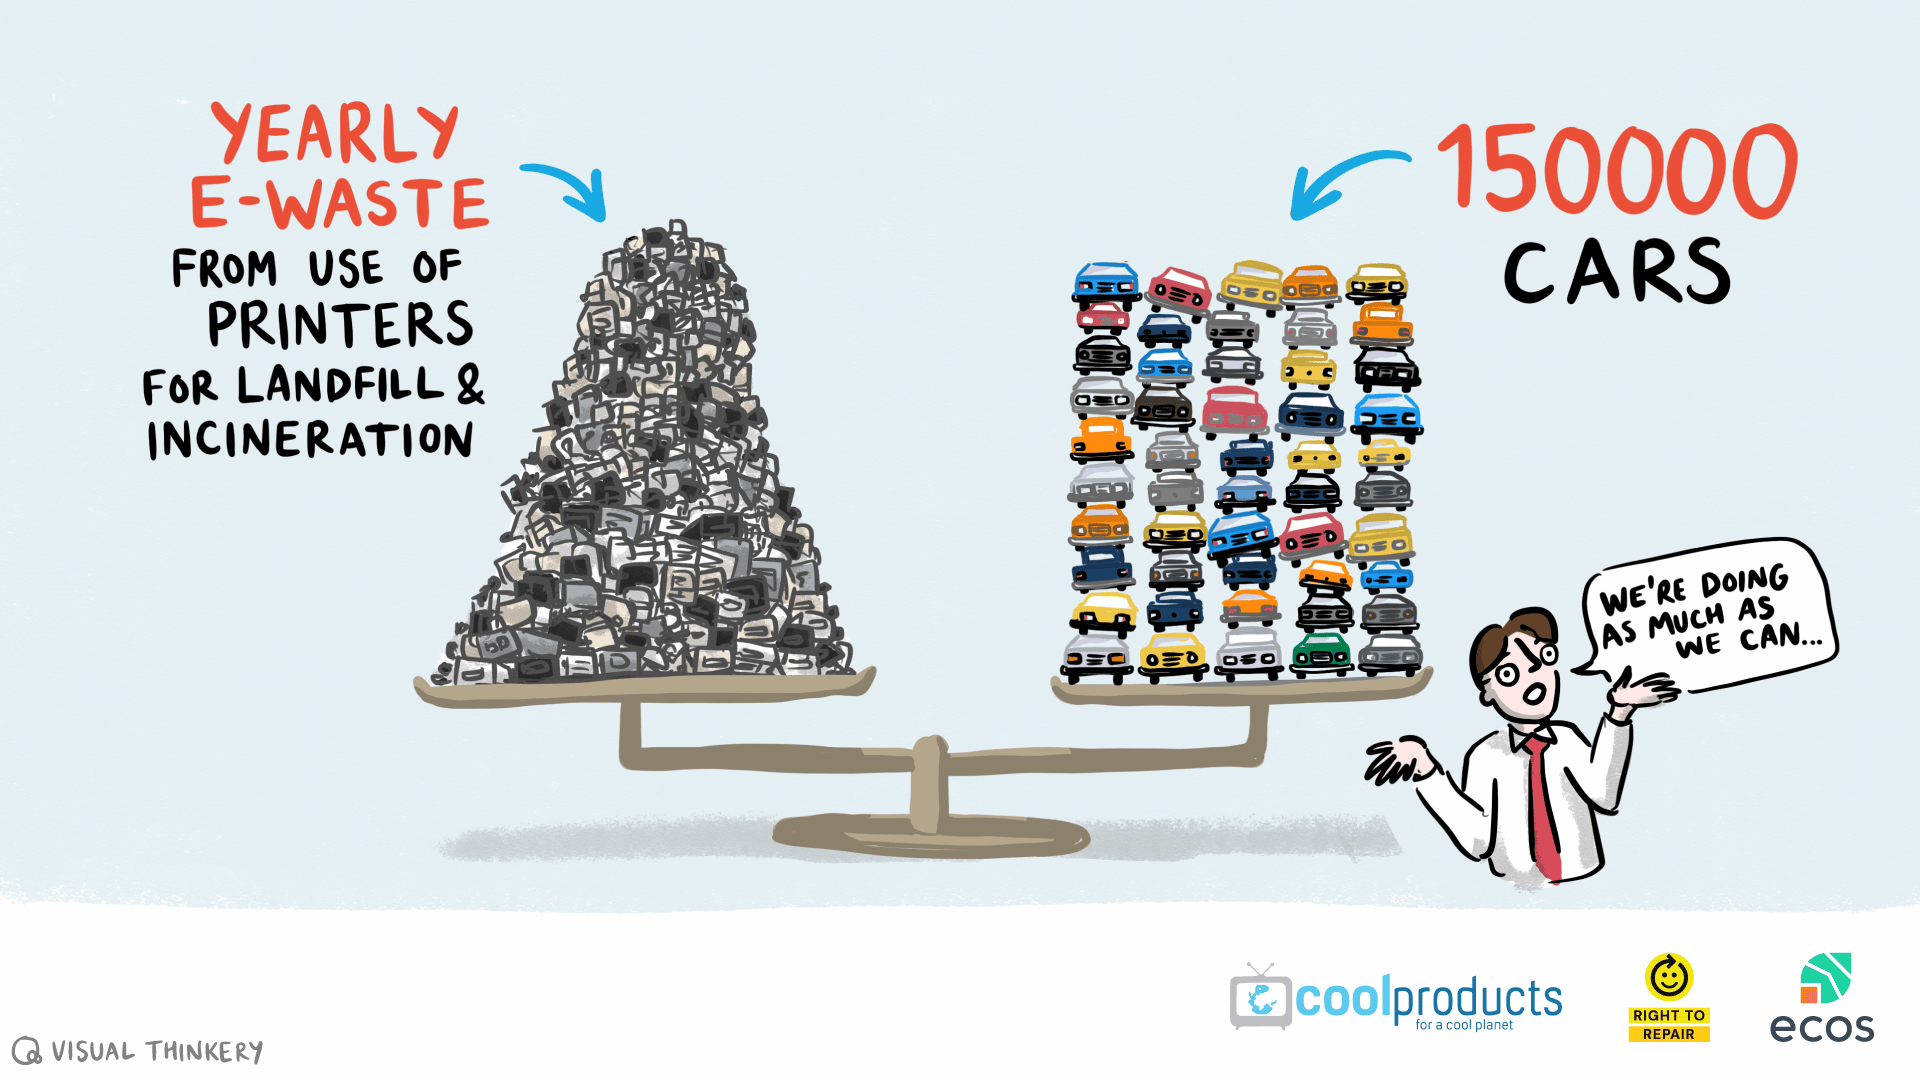 Lla quantité de déchets électroniques liés à l’utilisation d’imprimantes qui est incinérée ou mise en décharge en Europe chaque année équivaut au poids d’environ 150 000 voitures